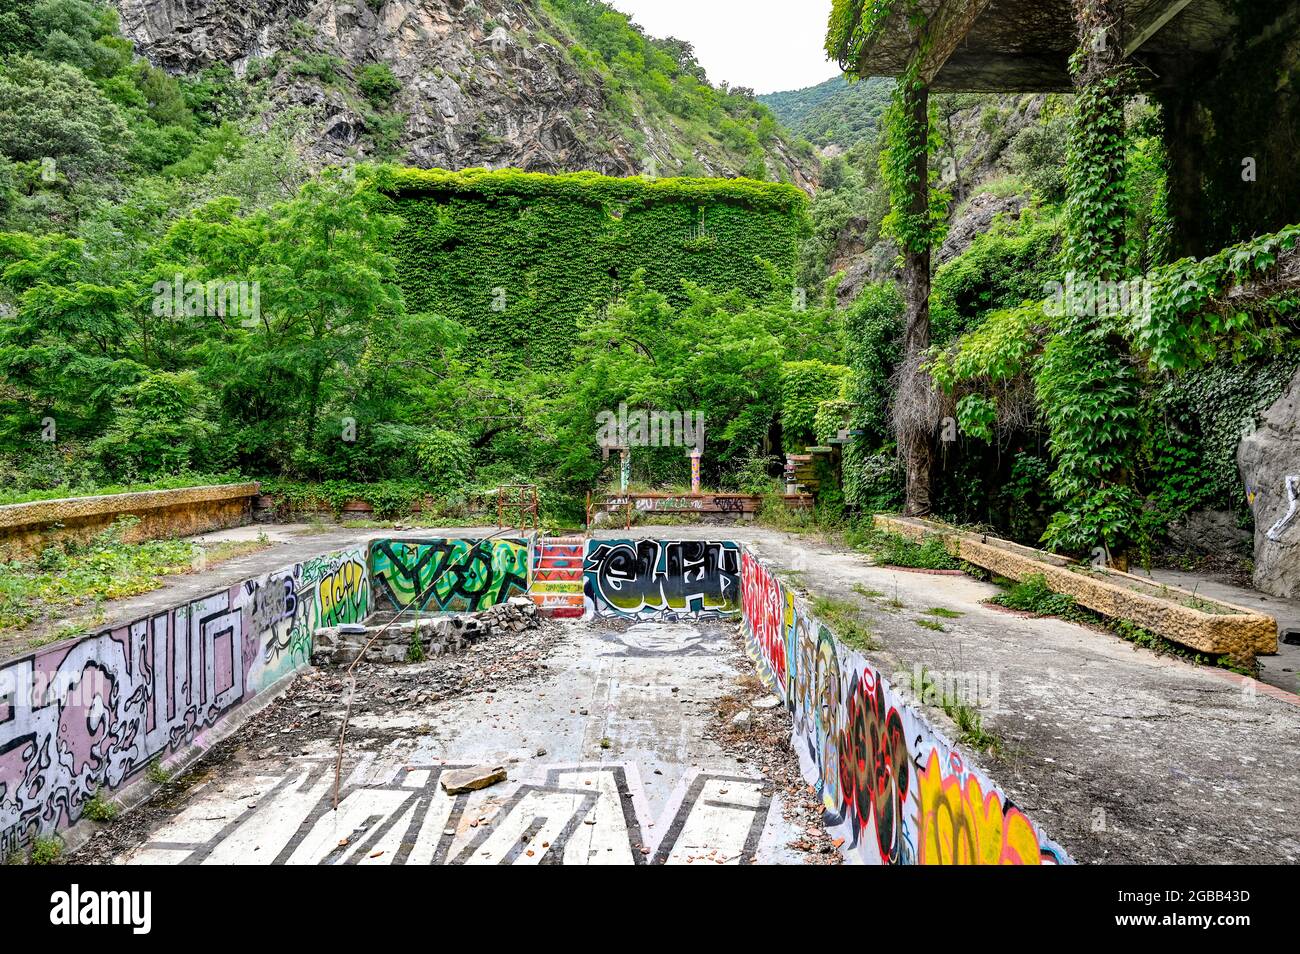 Lieux perdus en France : les ruines de la station thermale Thermes de Thuès, vallée de la Têt, Pyrénées-Orientales, France Banque D'Images